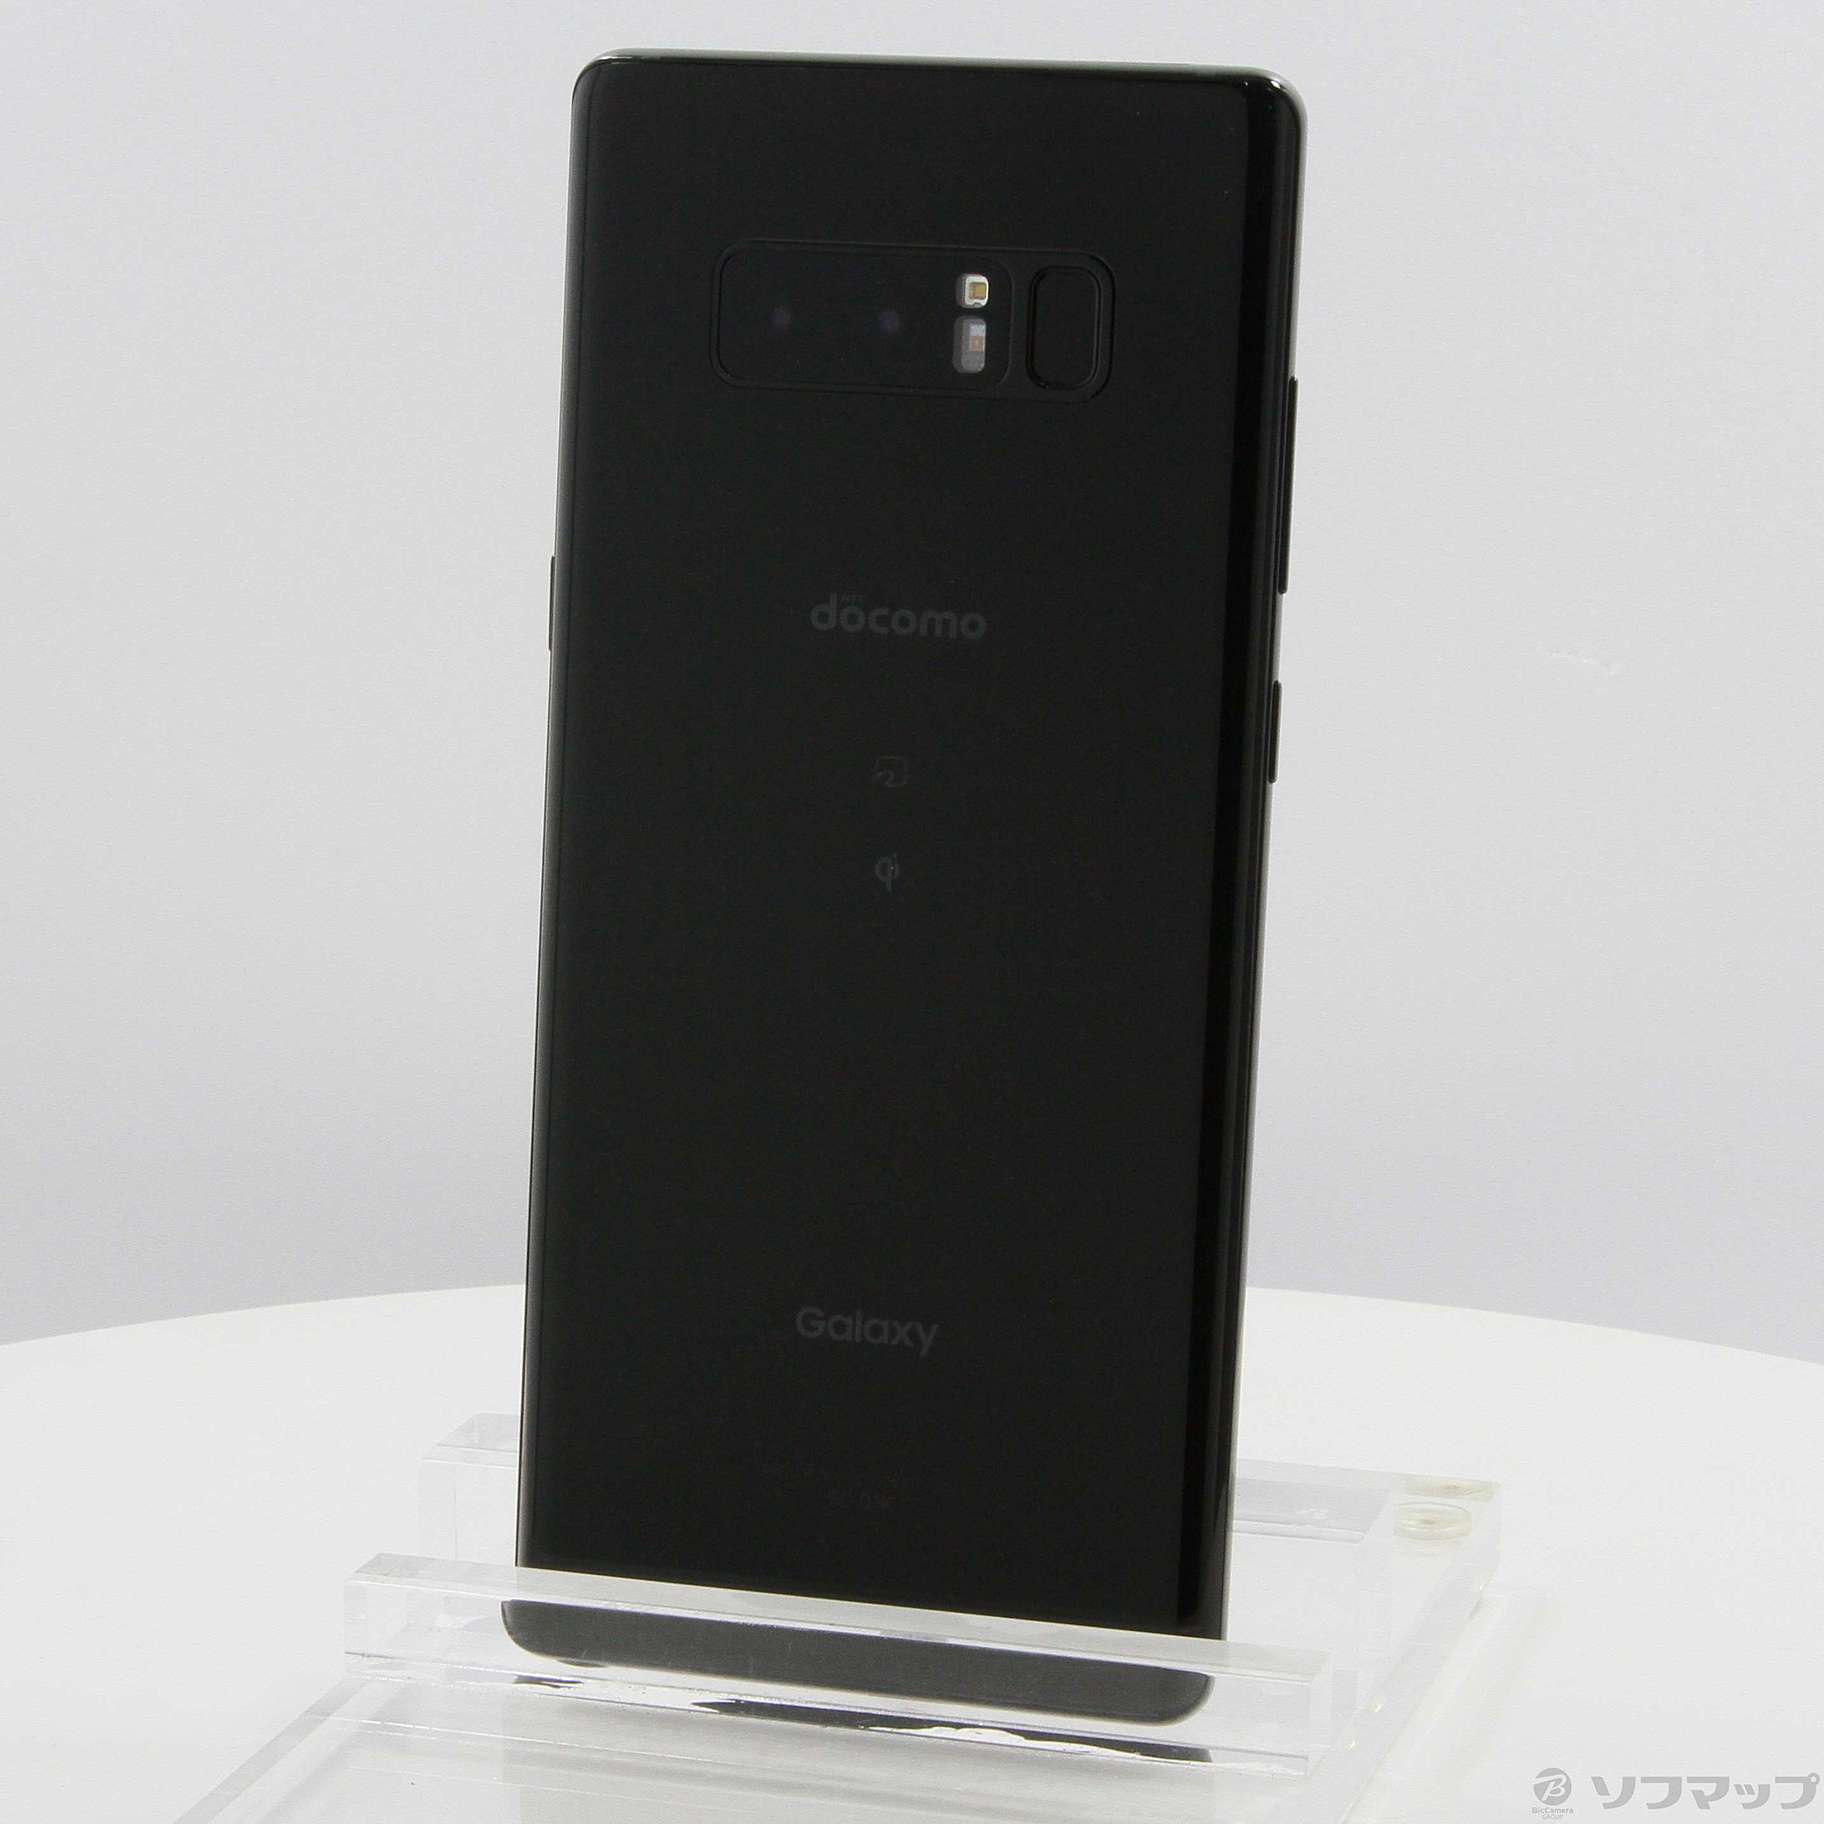 Galaxy Note 8 Black 64 GB docomo